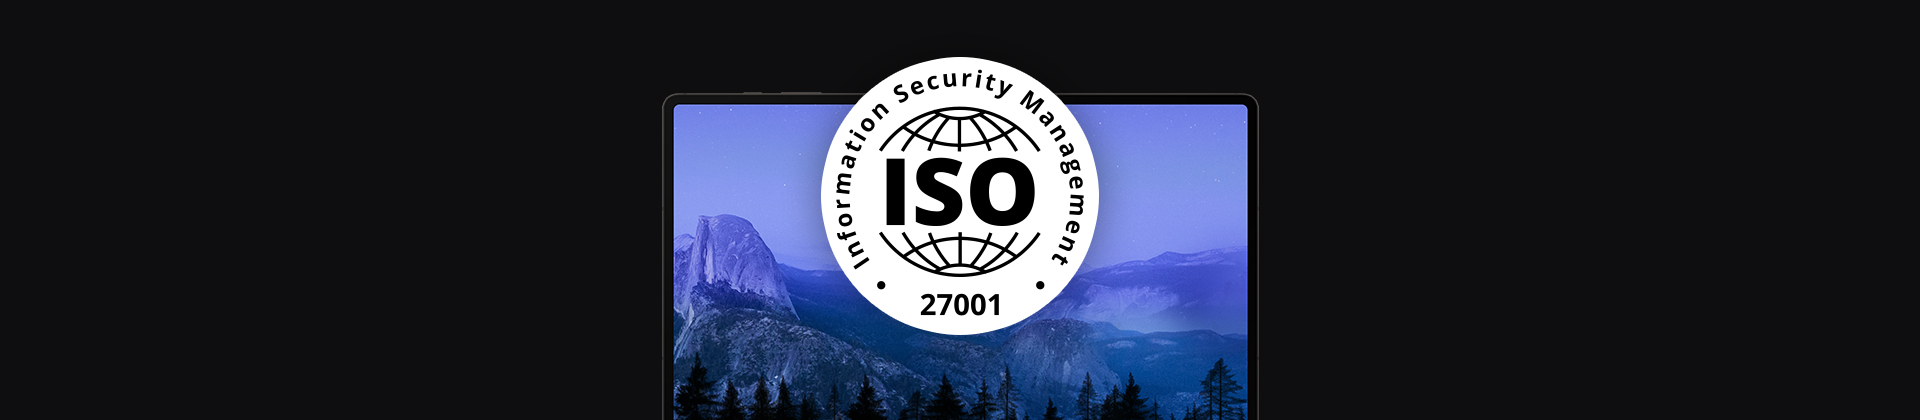 banner z laptopem i logo ISO 27001